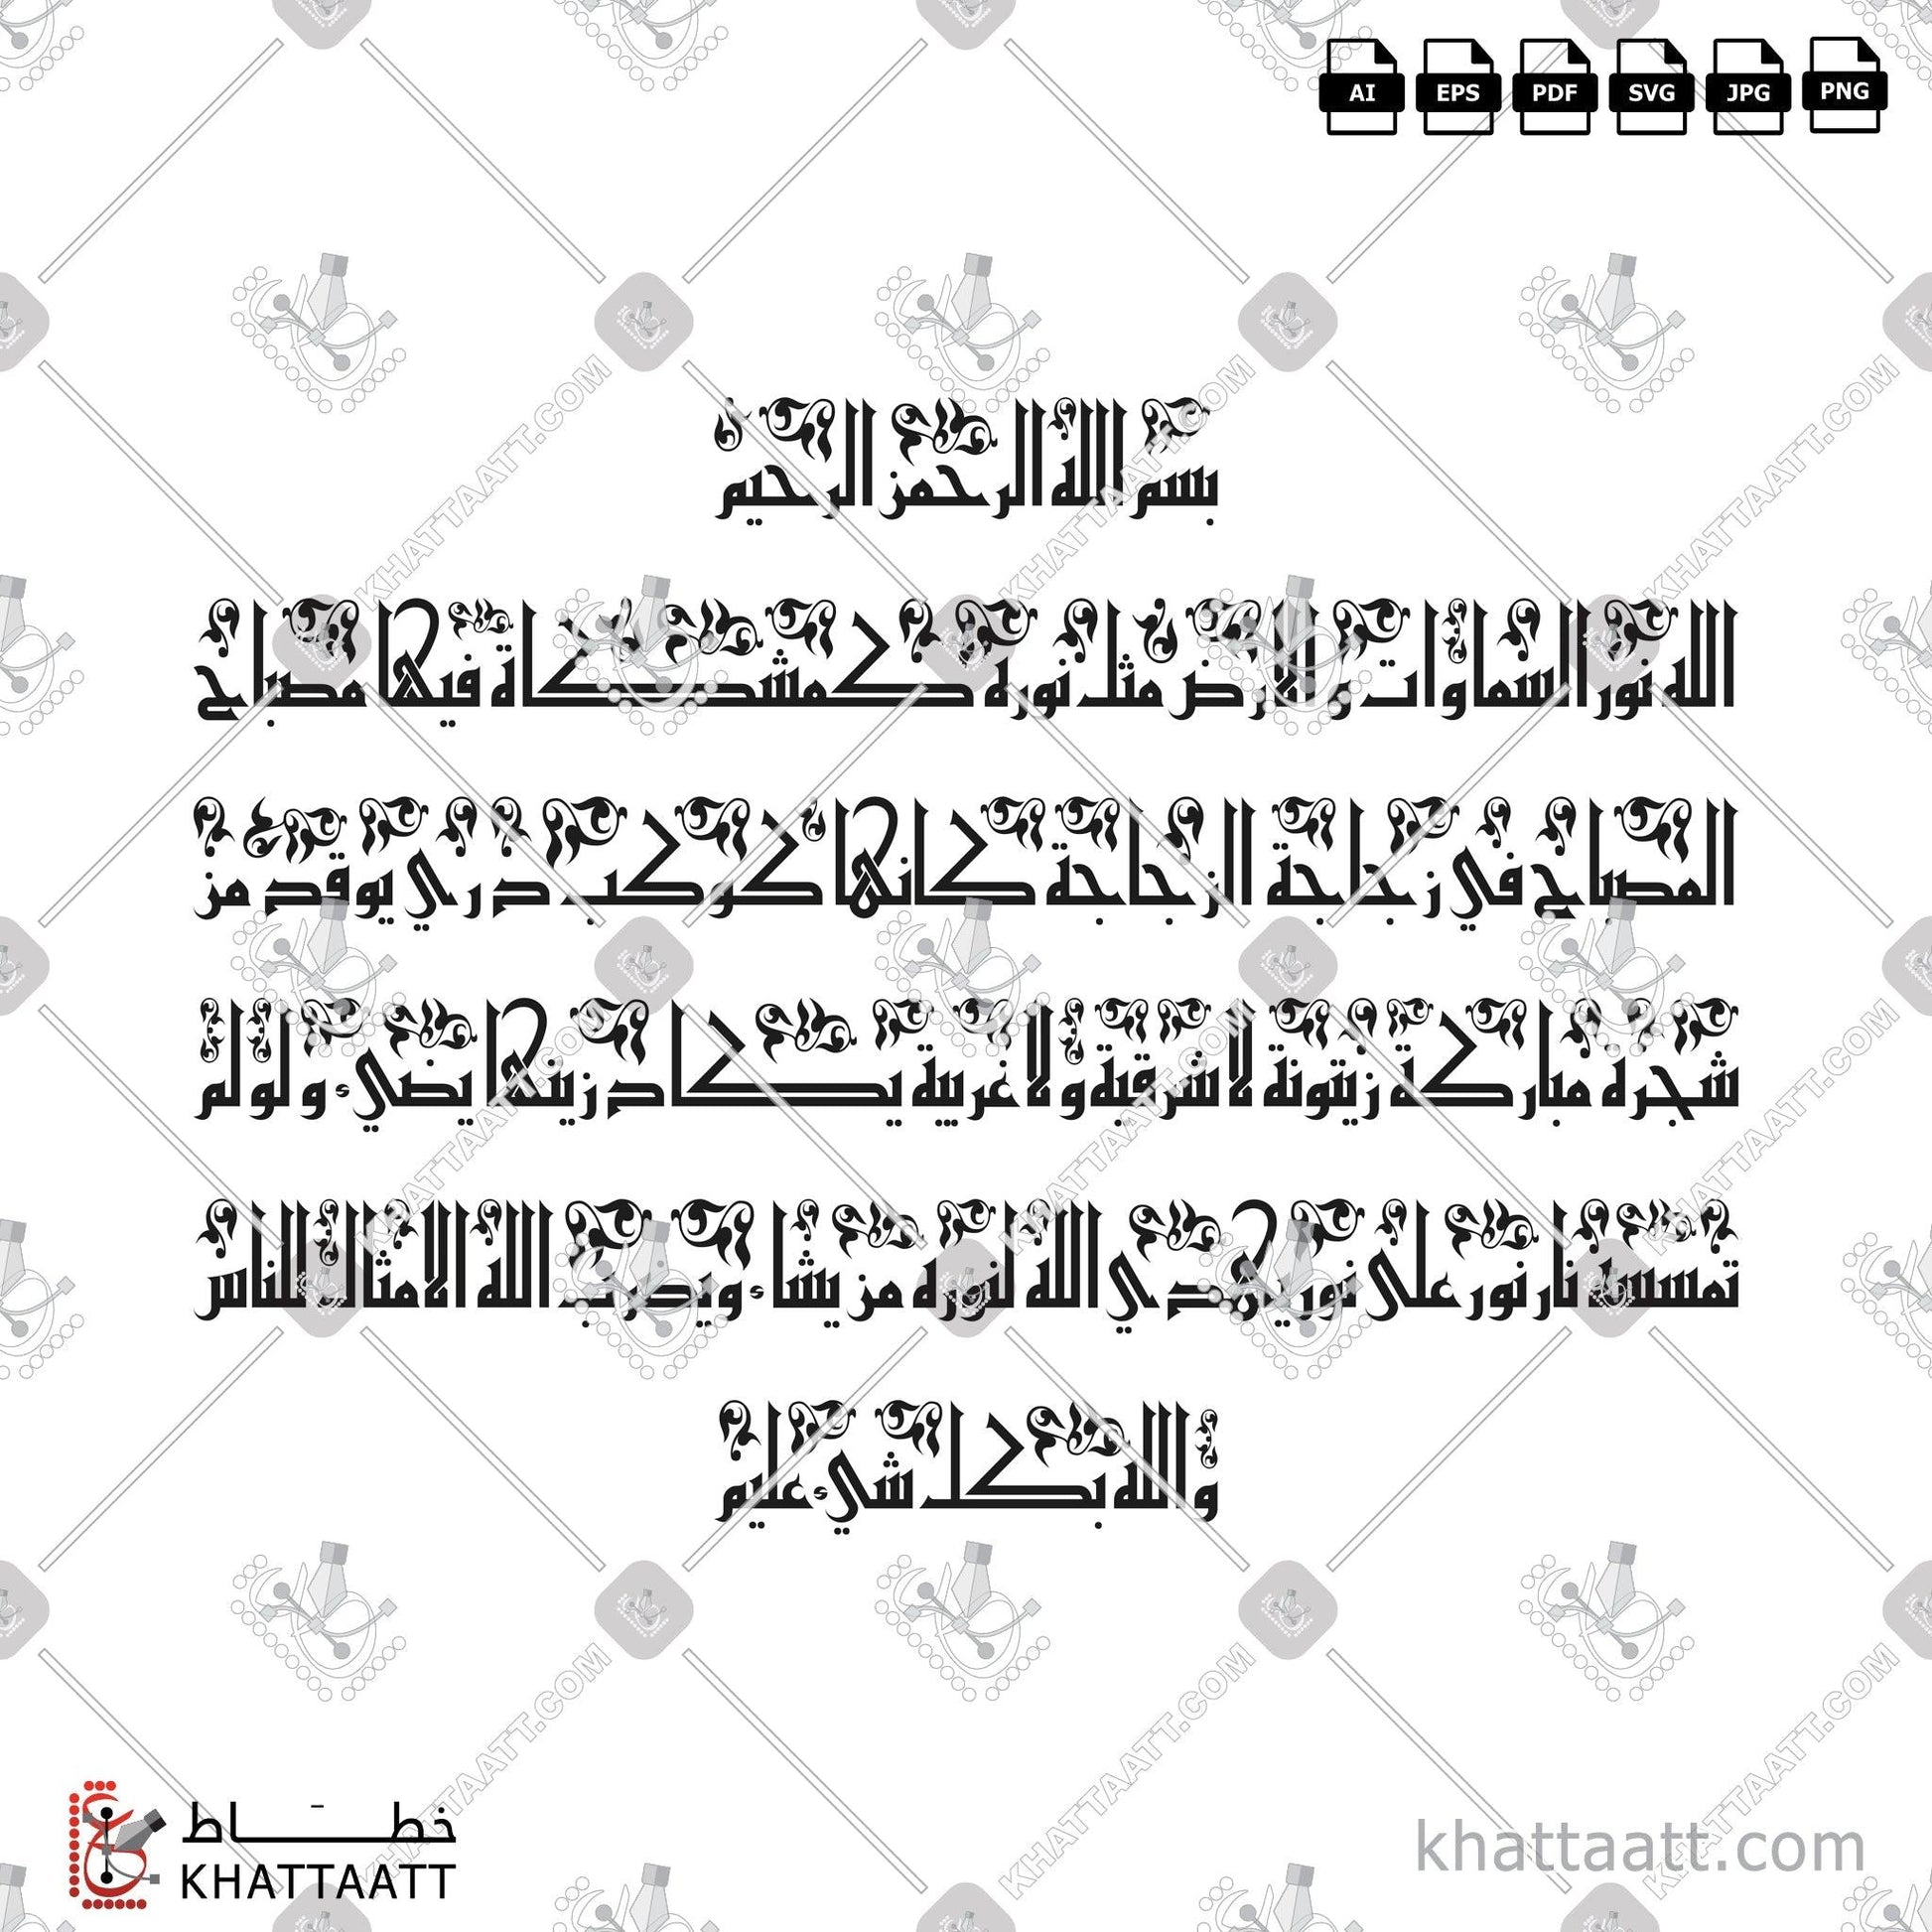 Download Arabic Calligraphy of Ayat An-Noor - آية النور in Kufi - الخط الكوفي in vector and .png